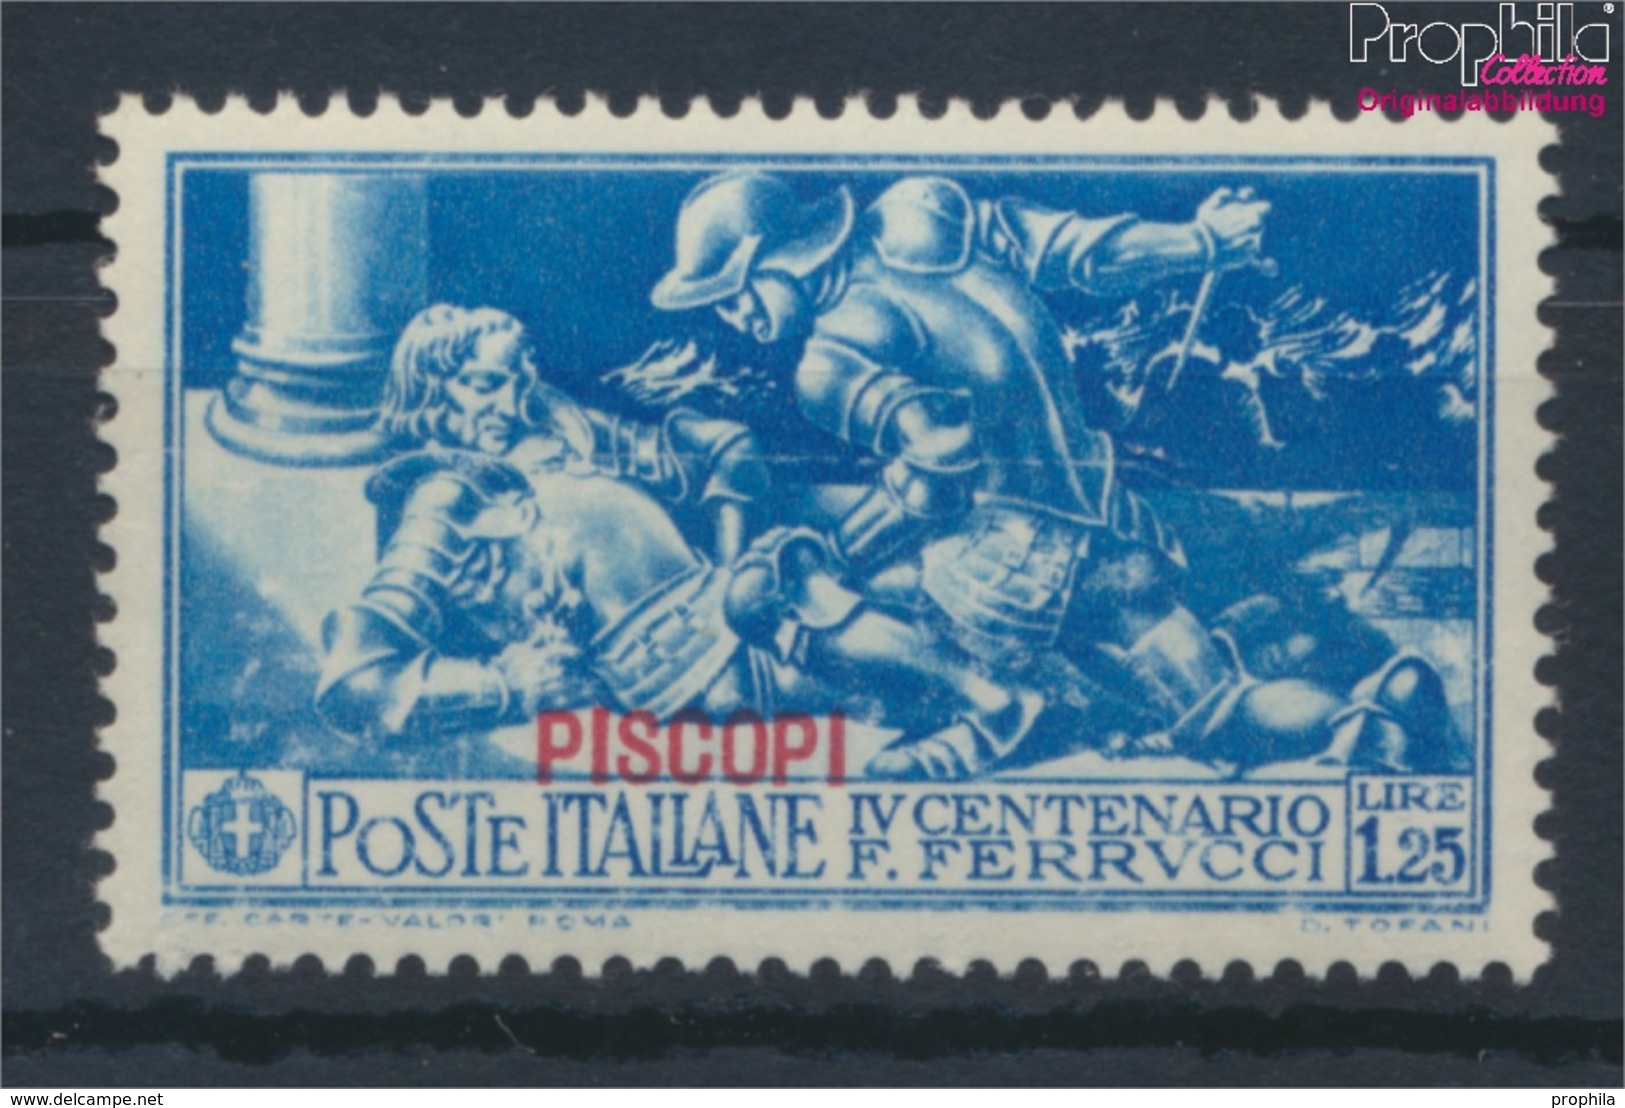 Ägäische Inseln 29IX Postfrisch 1930 Ferrucci Aufdruckausgabe Piscopi (9465473 - Aegean (Piscopi)